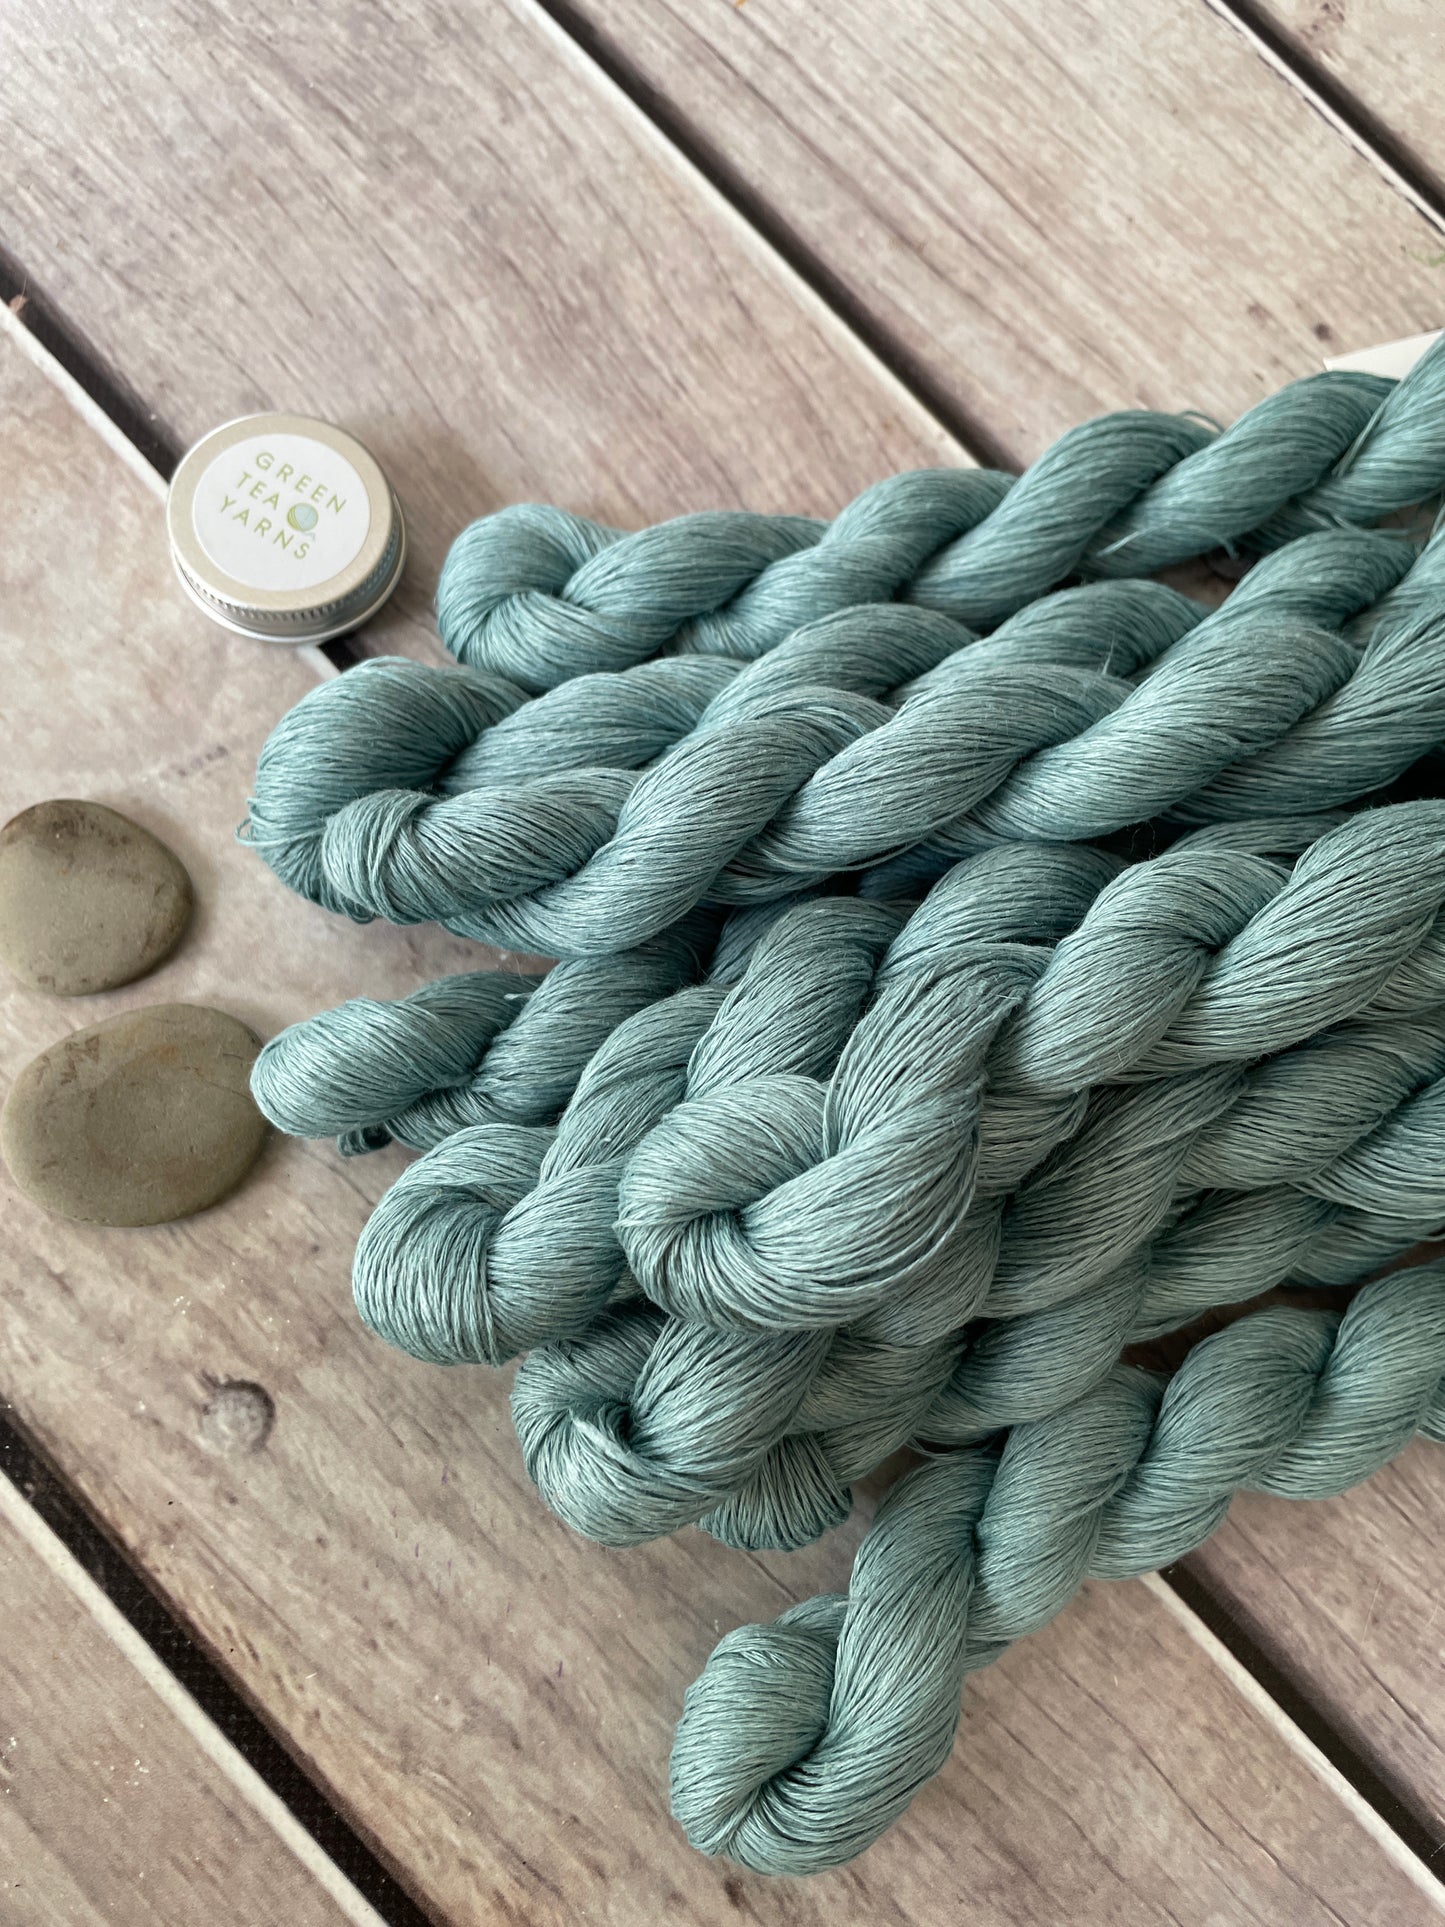 Seafoam on Ceylon pure linen yarn - 50 gm skeins